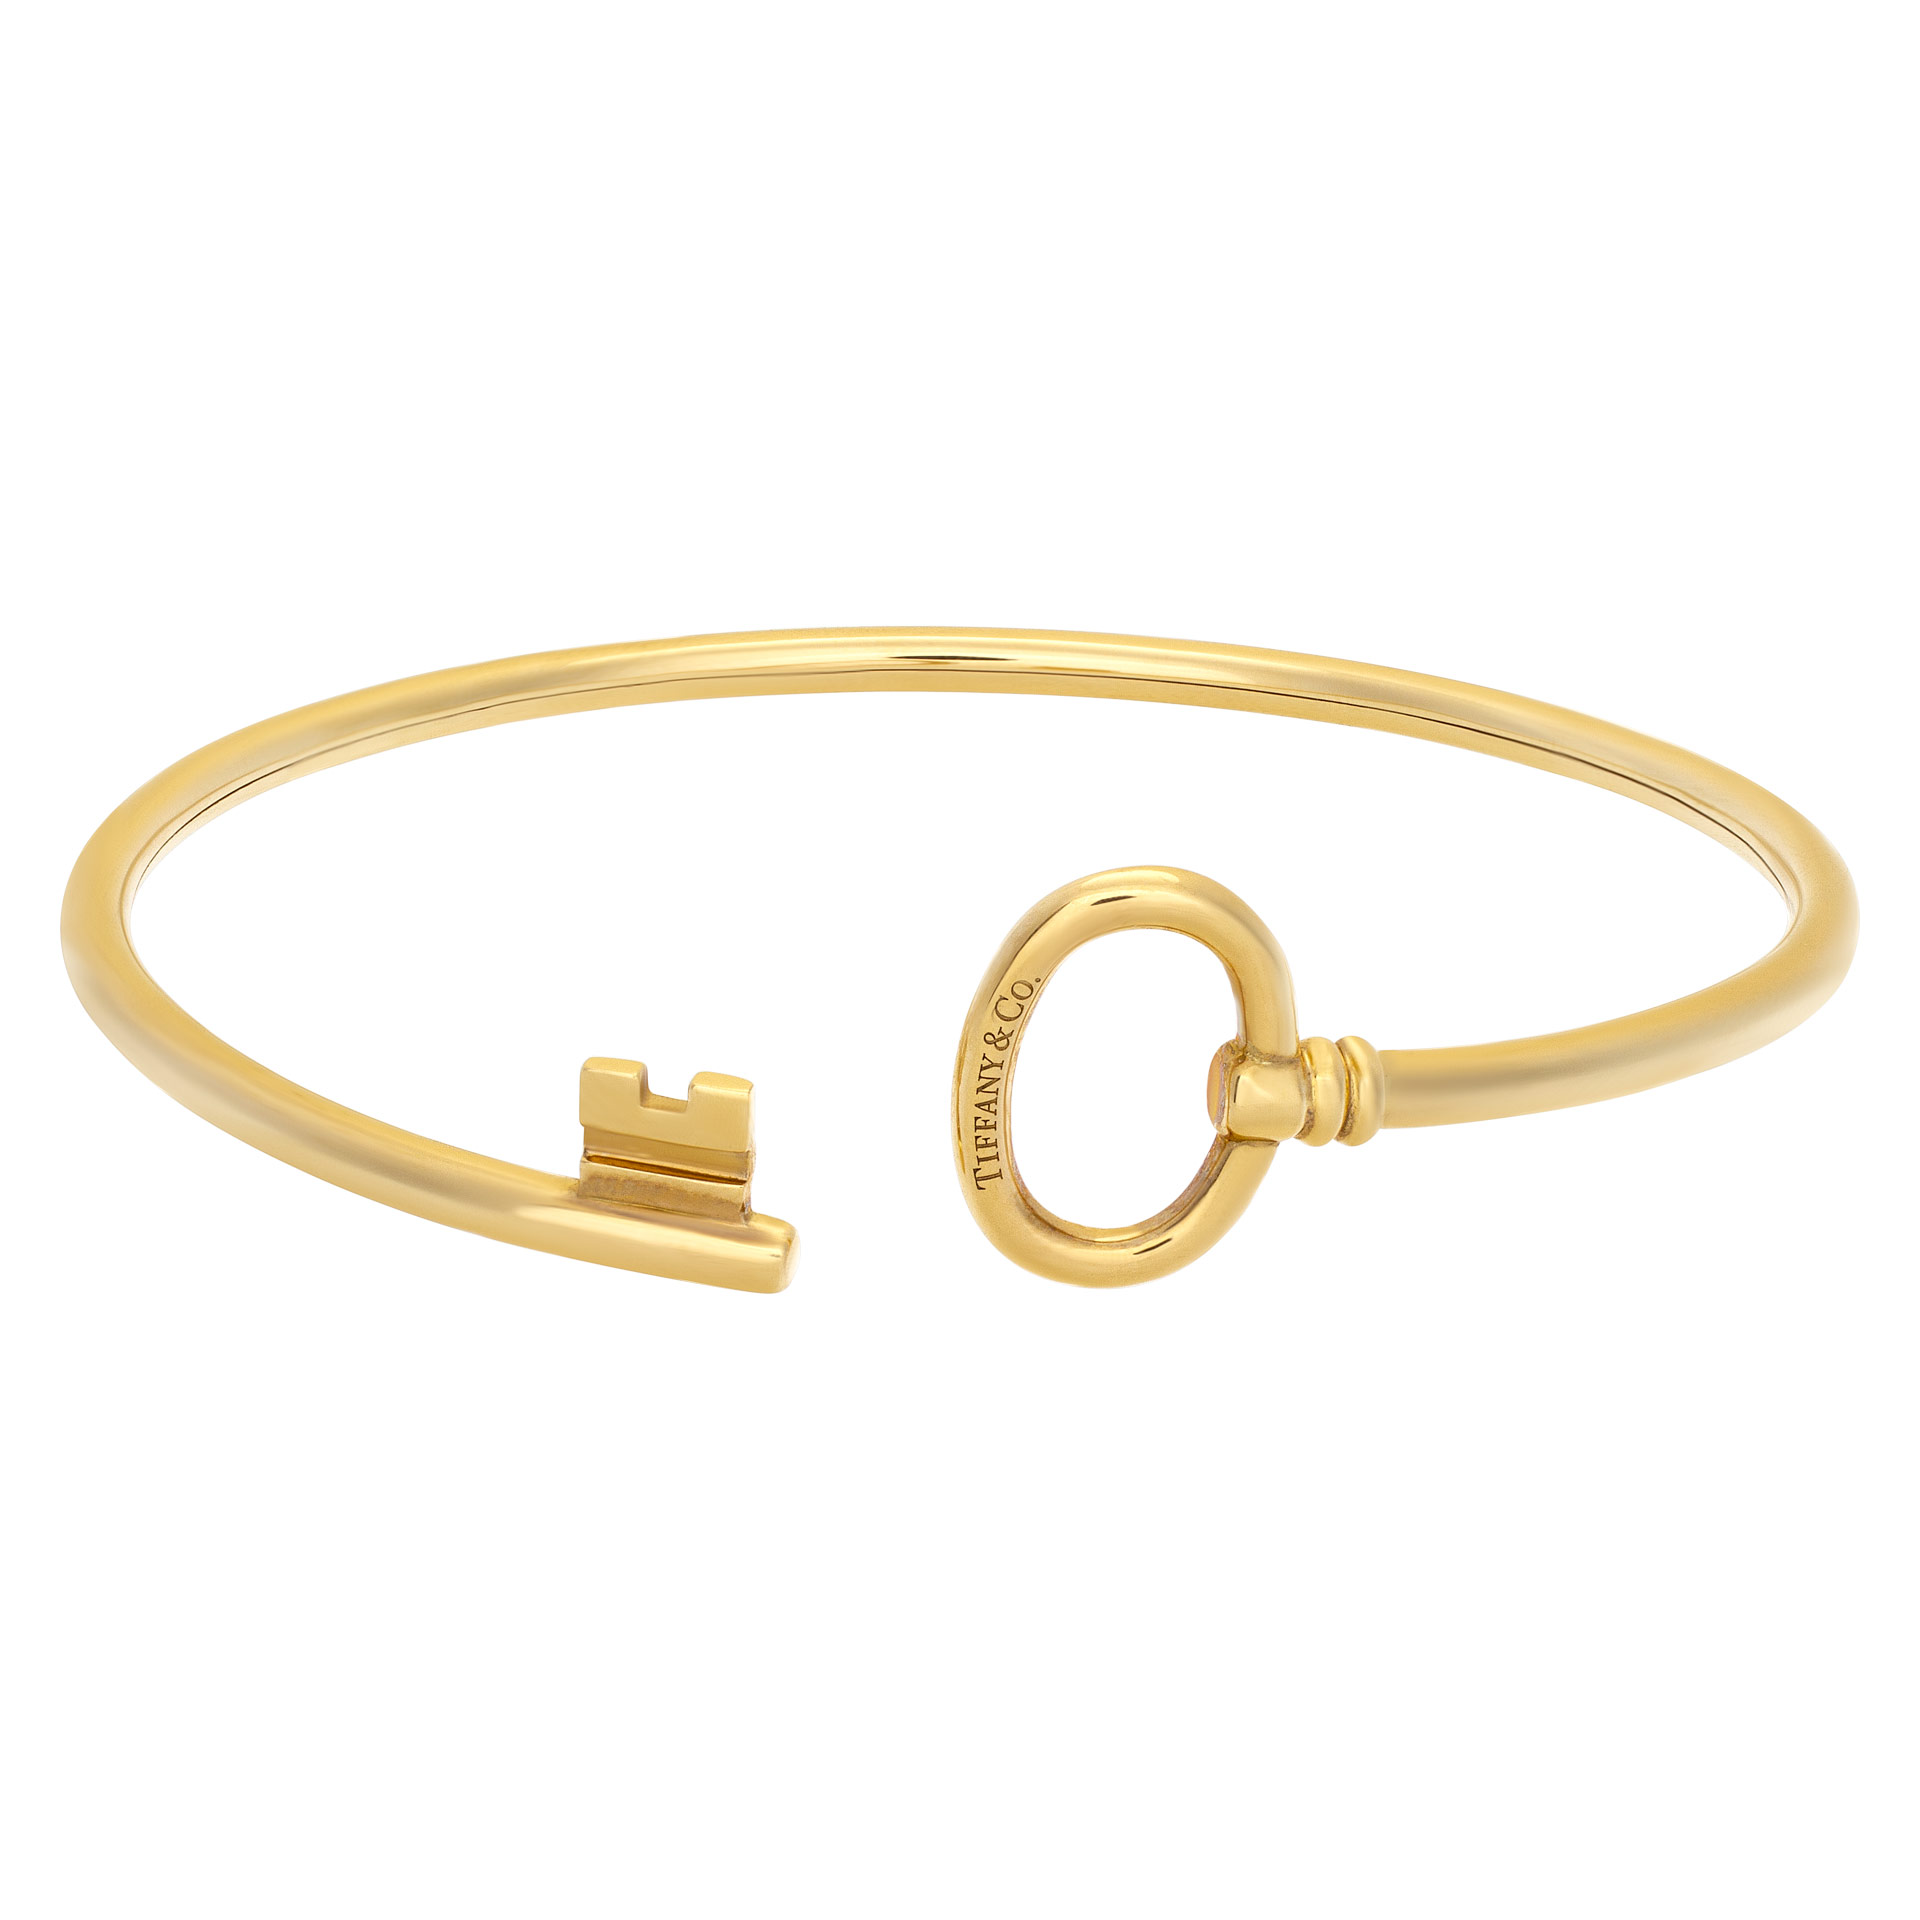 Tiffany & Co wire key bracelet in 18k yellow gold